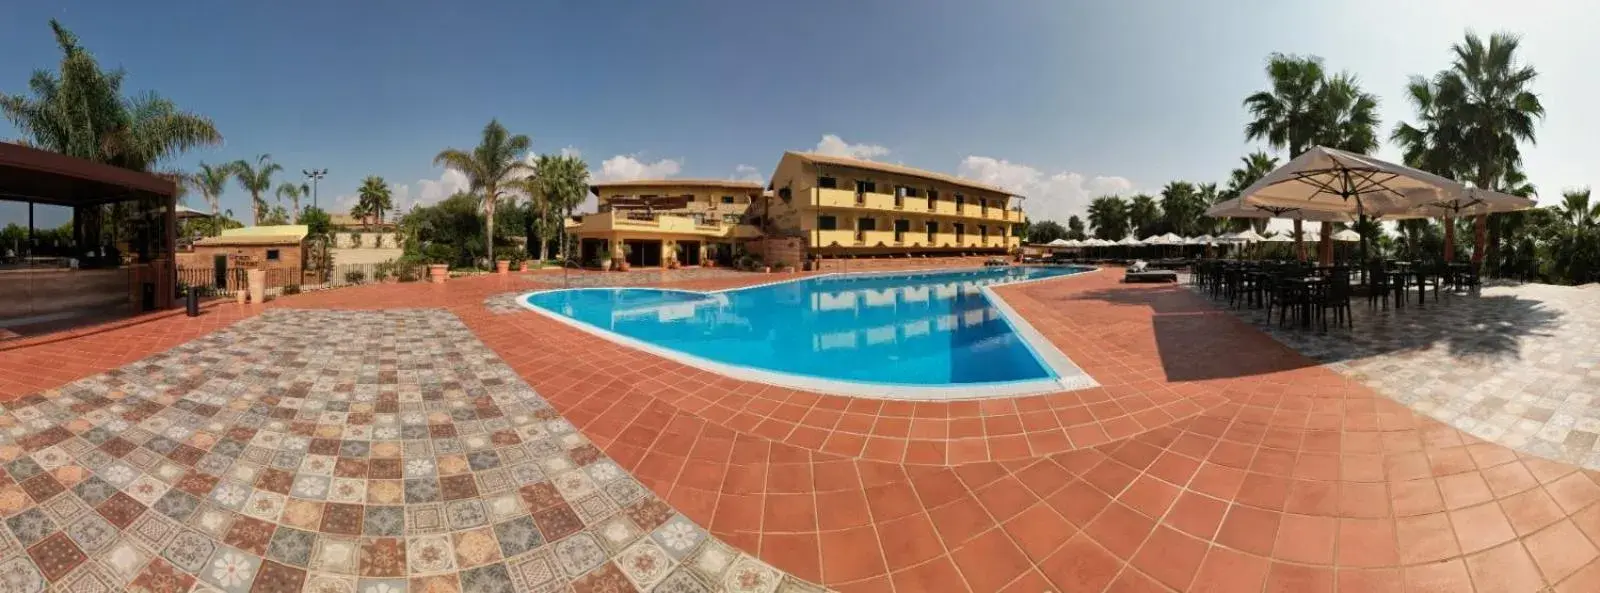 Swimming Pool in Baia Di Ulisse Wellness & Spa